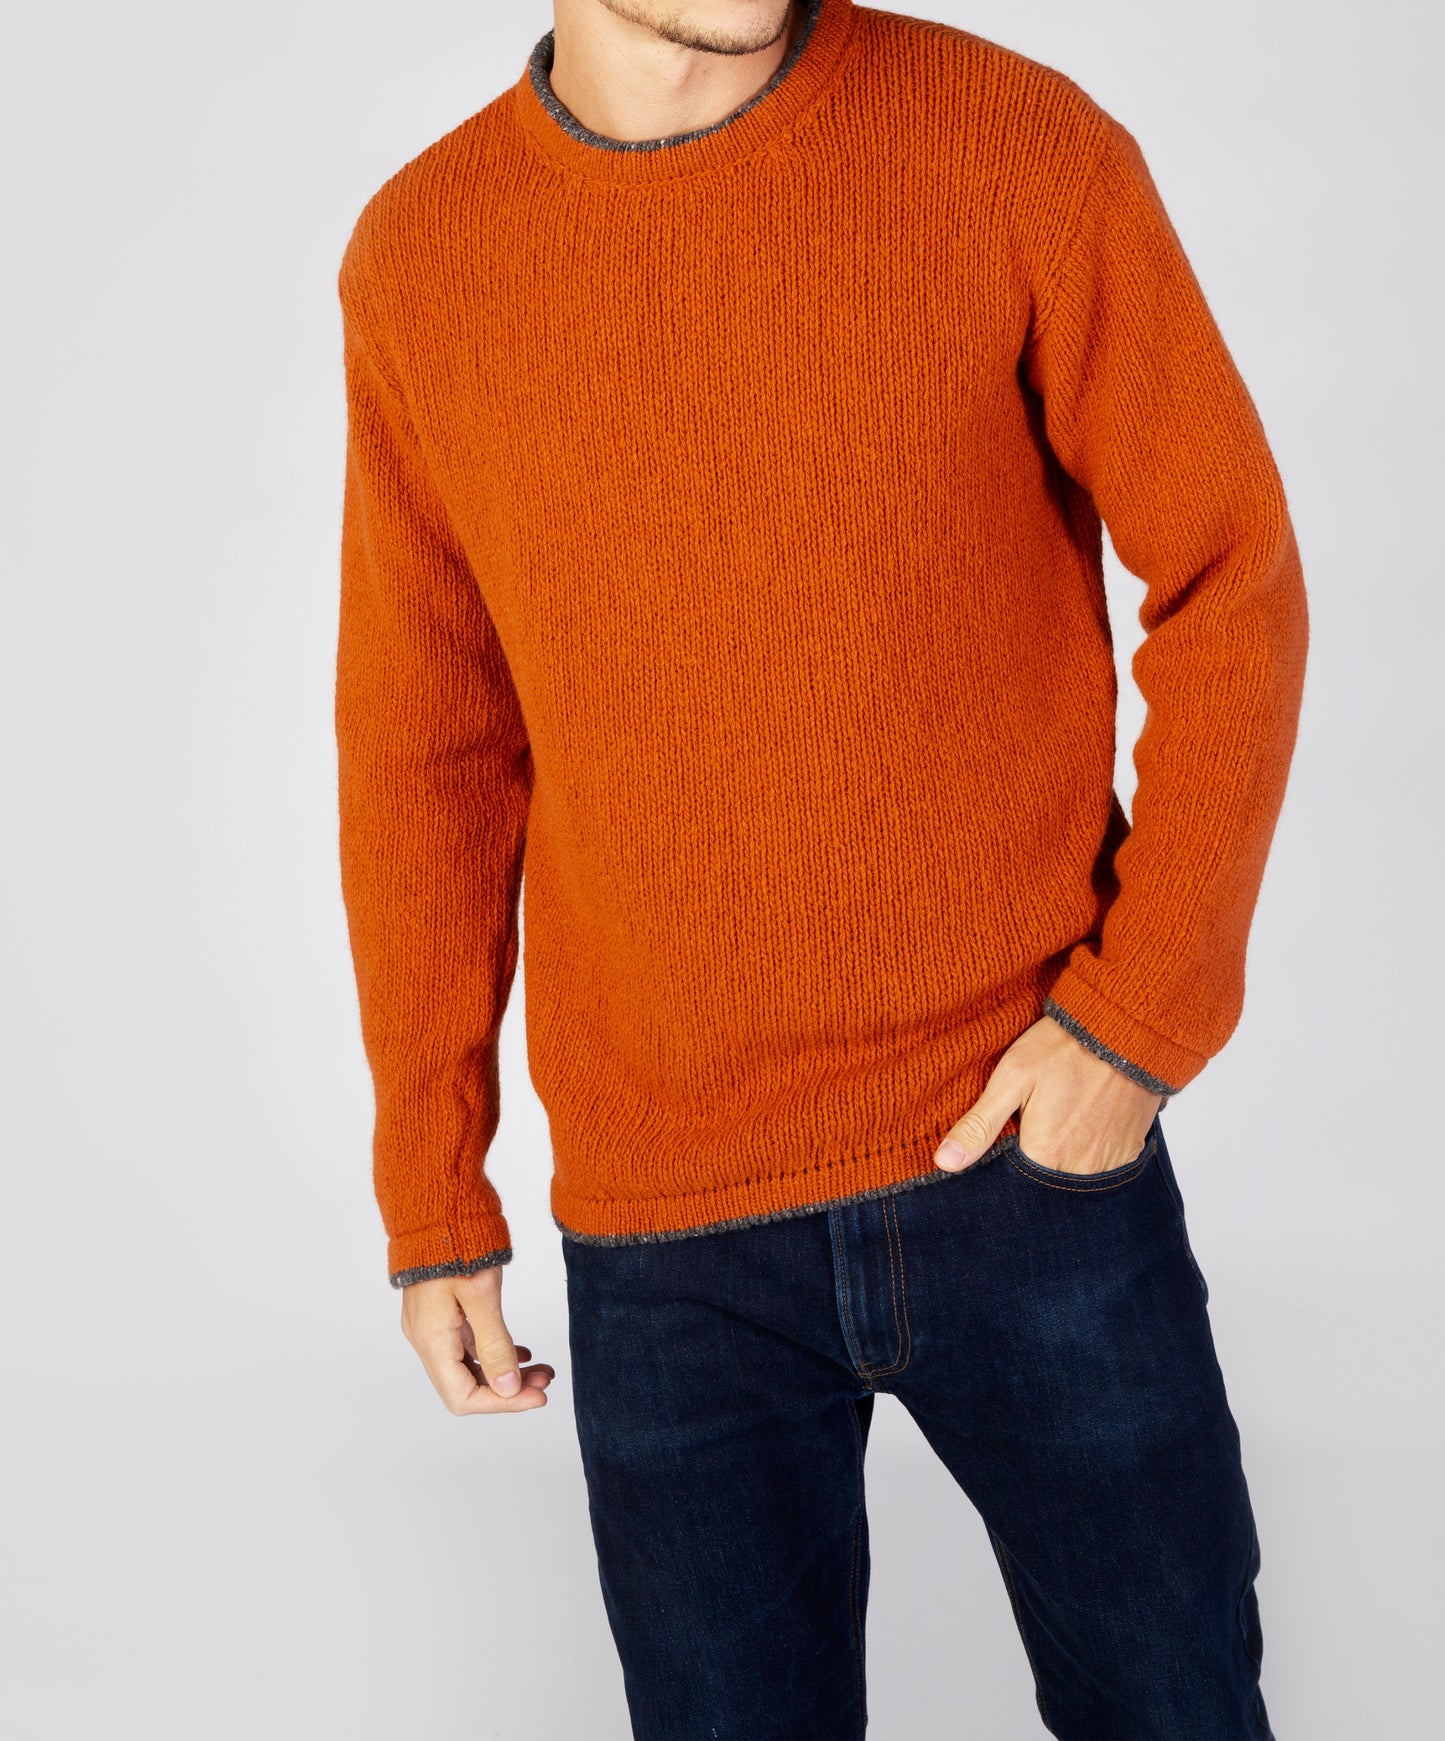 IrelandsEye Knitwear Roundstone Sweater Terracotta